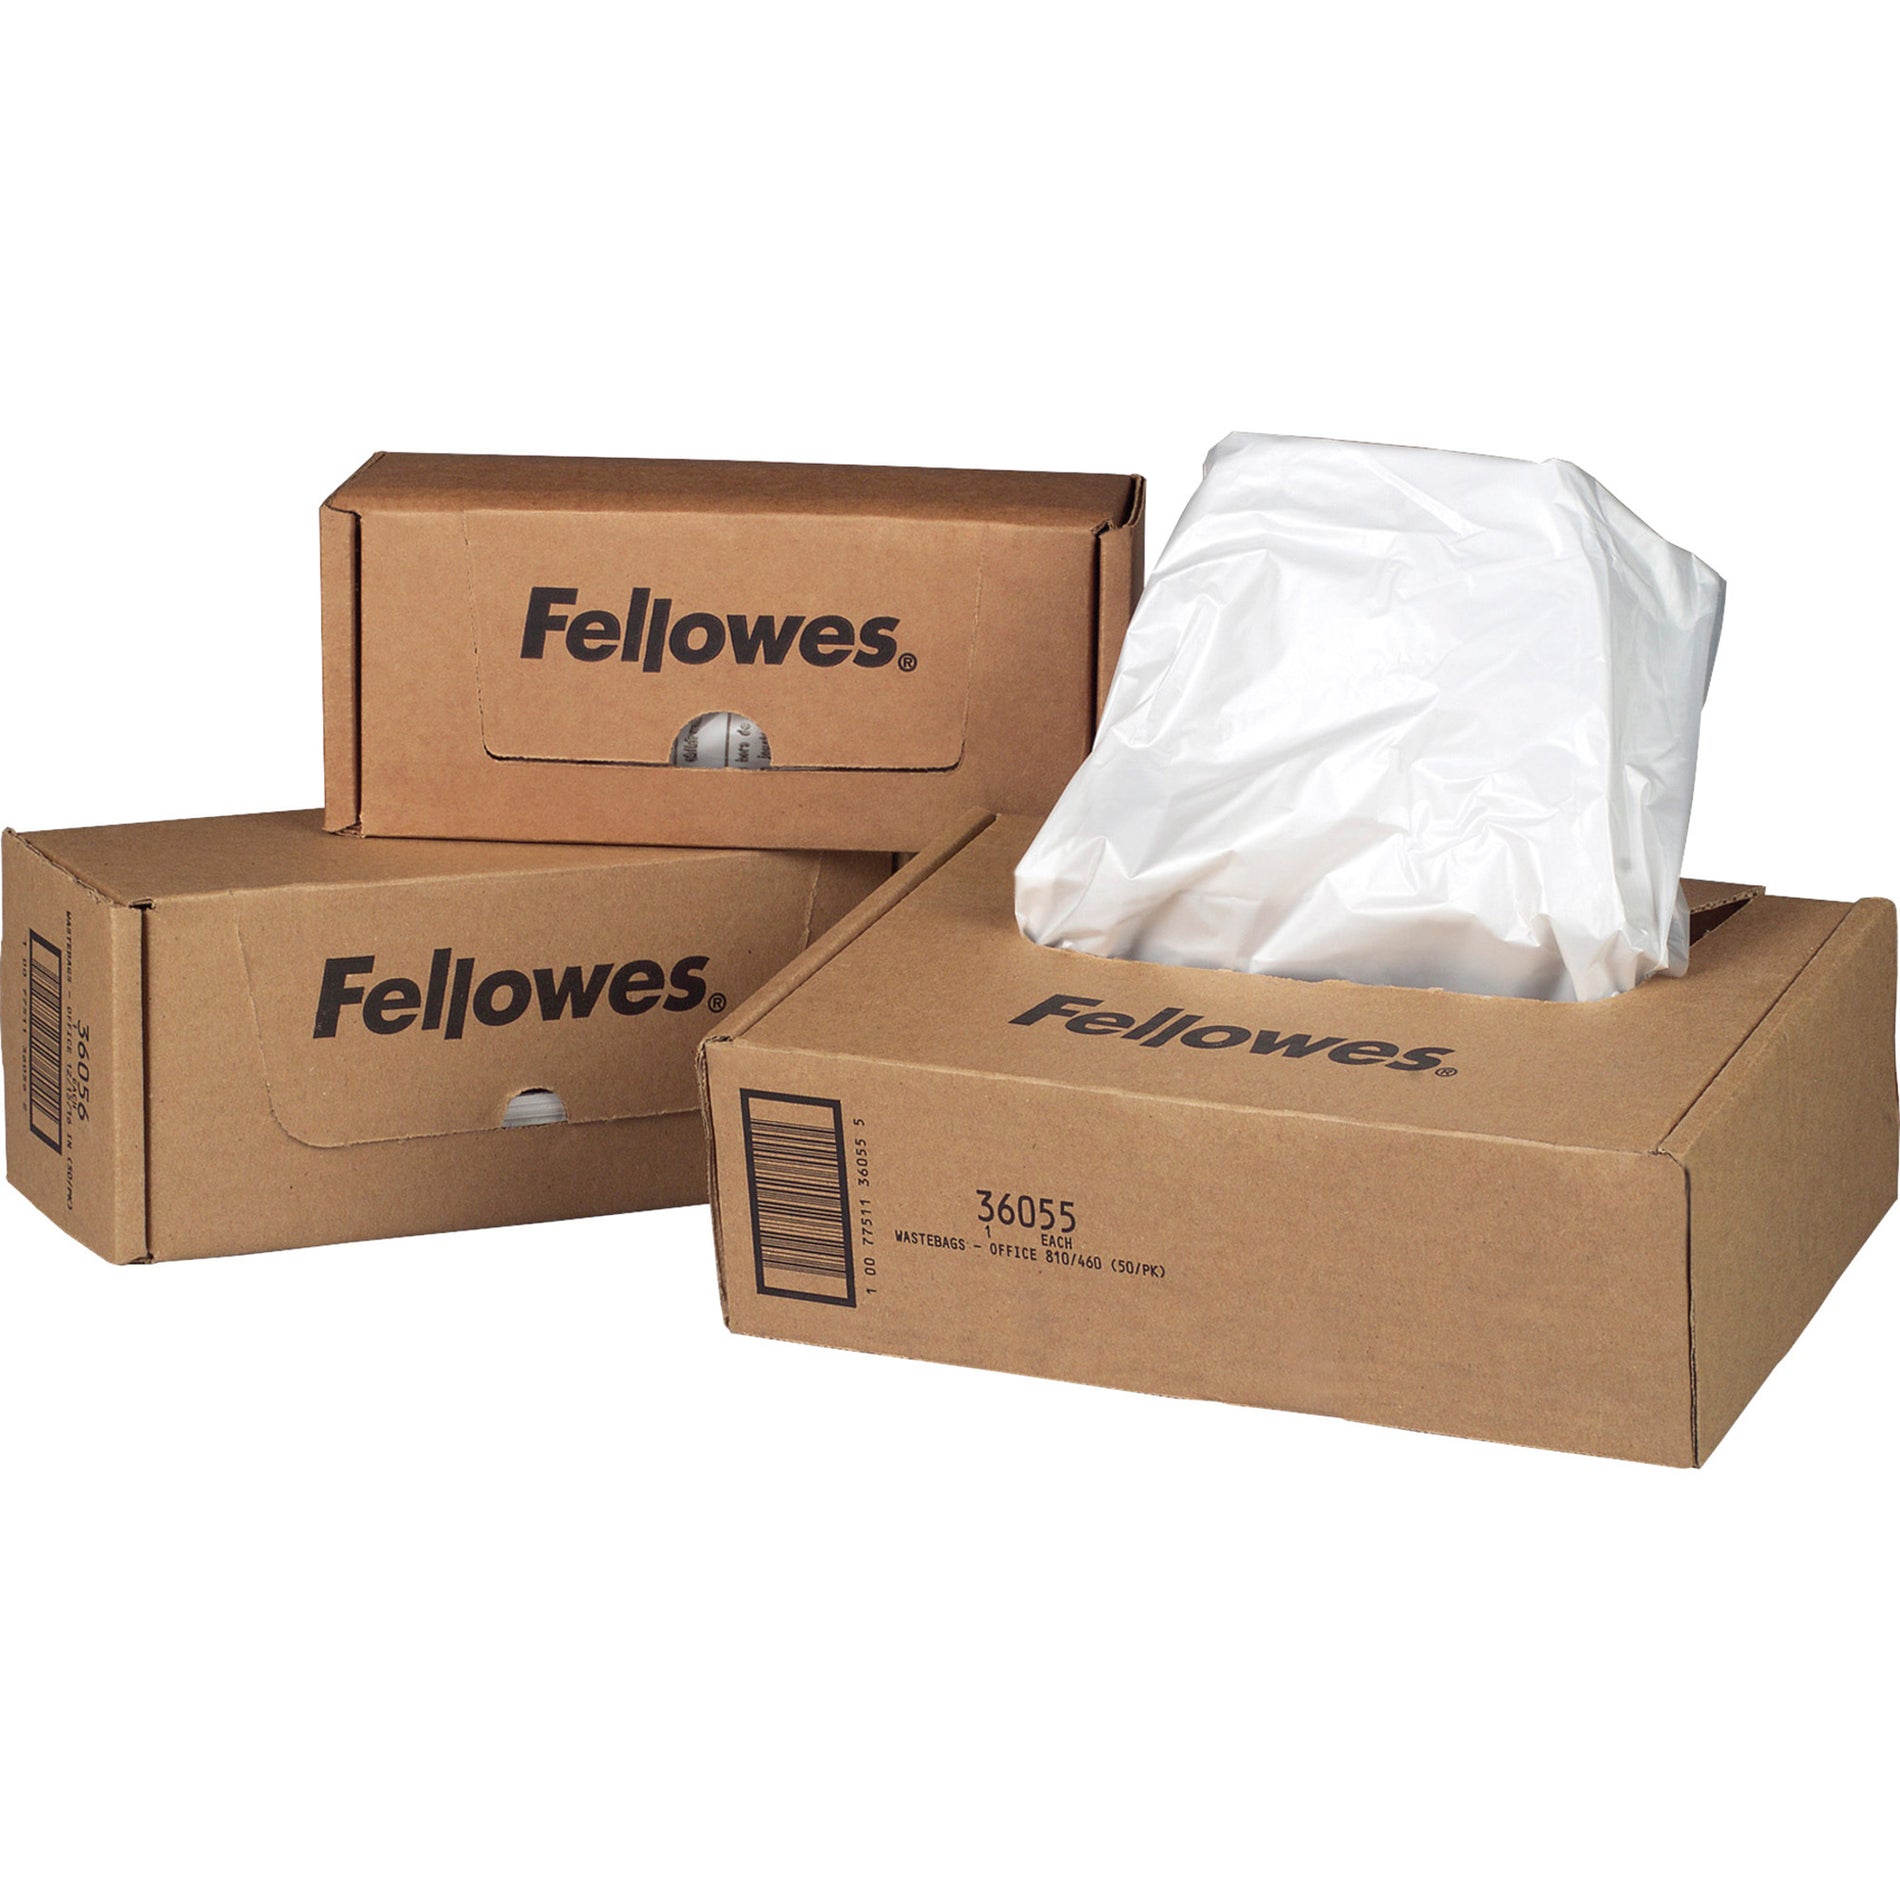 Fellowes 36054 125/225/2250 Series Shredder Waste Bags Durable Disposable Recyclable 20 gal Capacity Fellowes 36054 125/225/2250 Serie Distruggi Documenti Borse per Rifiuti Resistente Usa e Getta Riciclabile Capacità da 20 gal